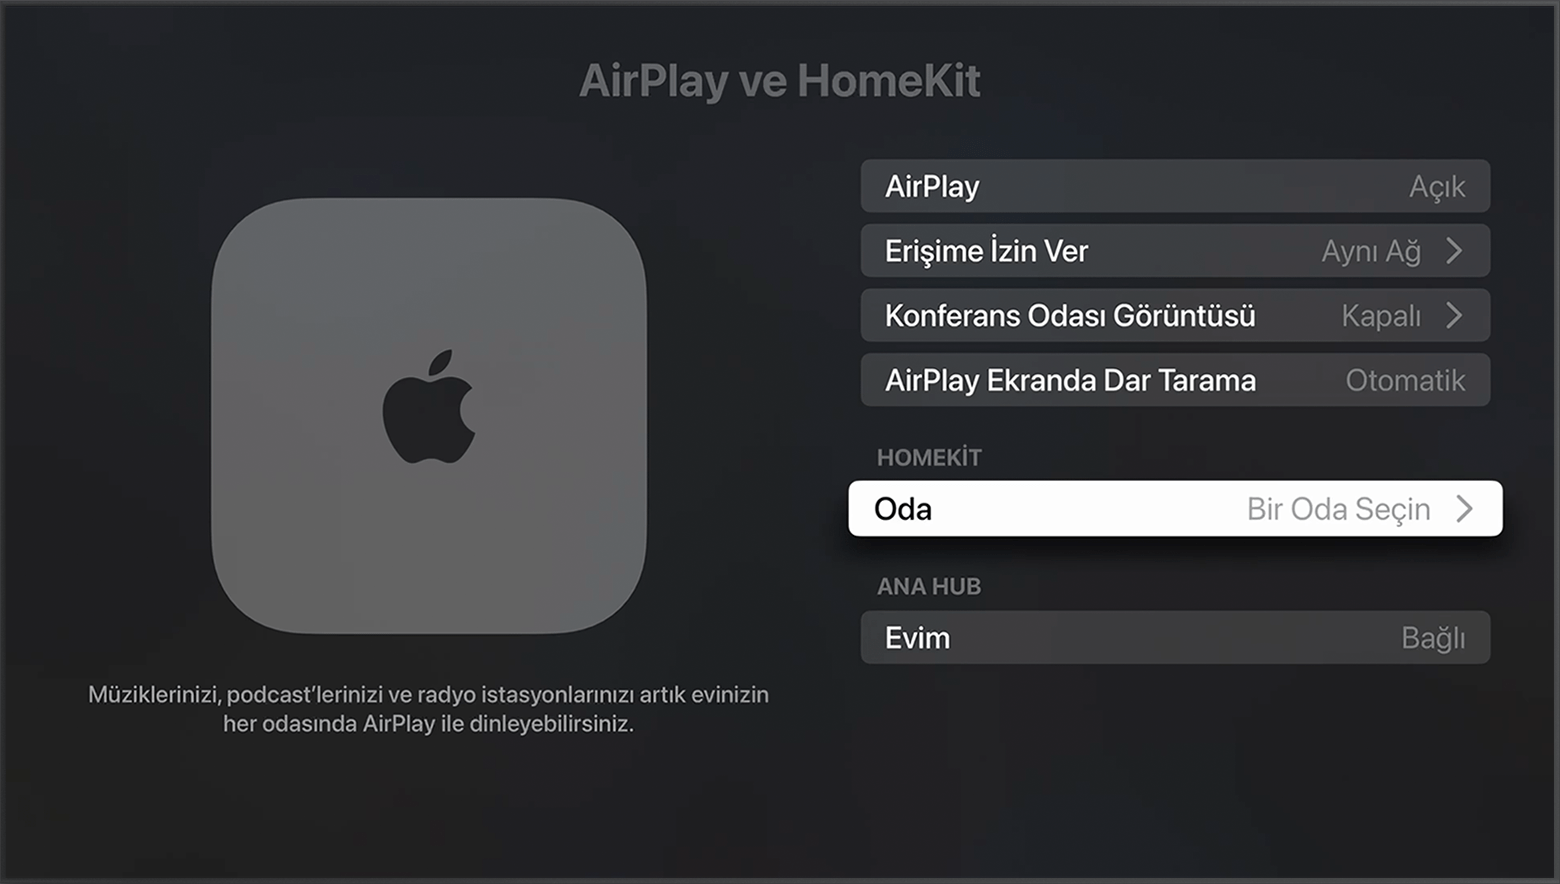 Oda, Apple TV ayarlarında AirPlay ve HomeKit ekranında HomeKit bölümünde görünür